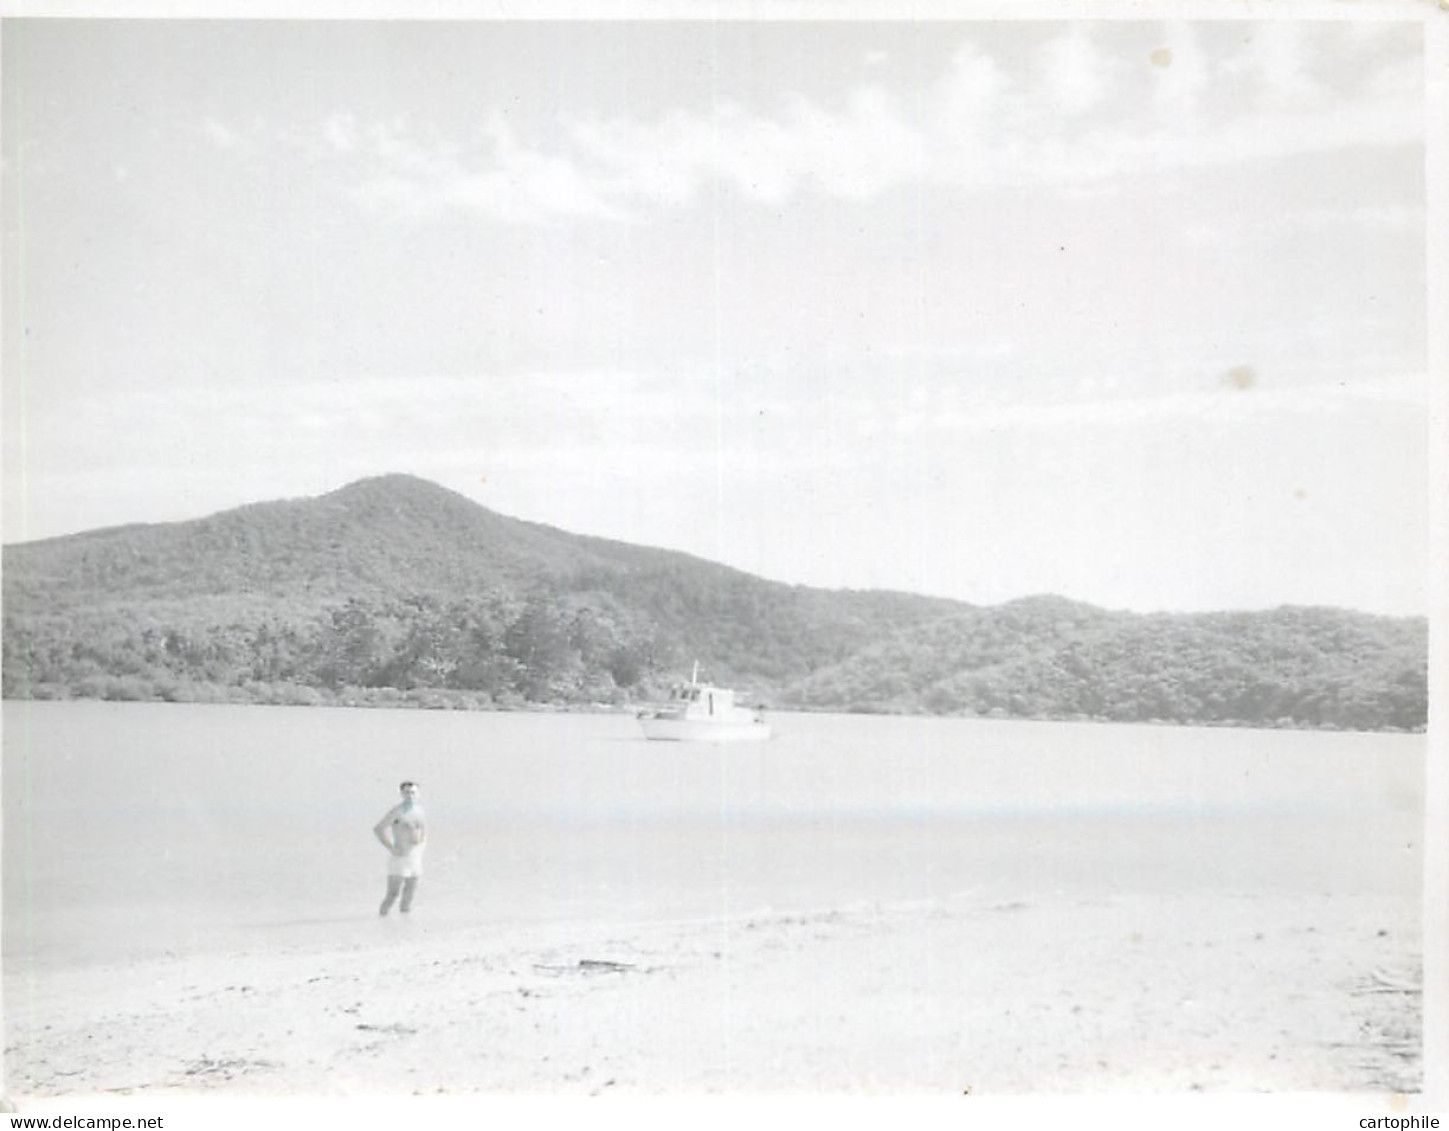 Australia - Lot de 10 photos de 1948 Barrière de Corail prise par Chollot Consulat Francais à Sydney NSW Bowen Peche